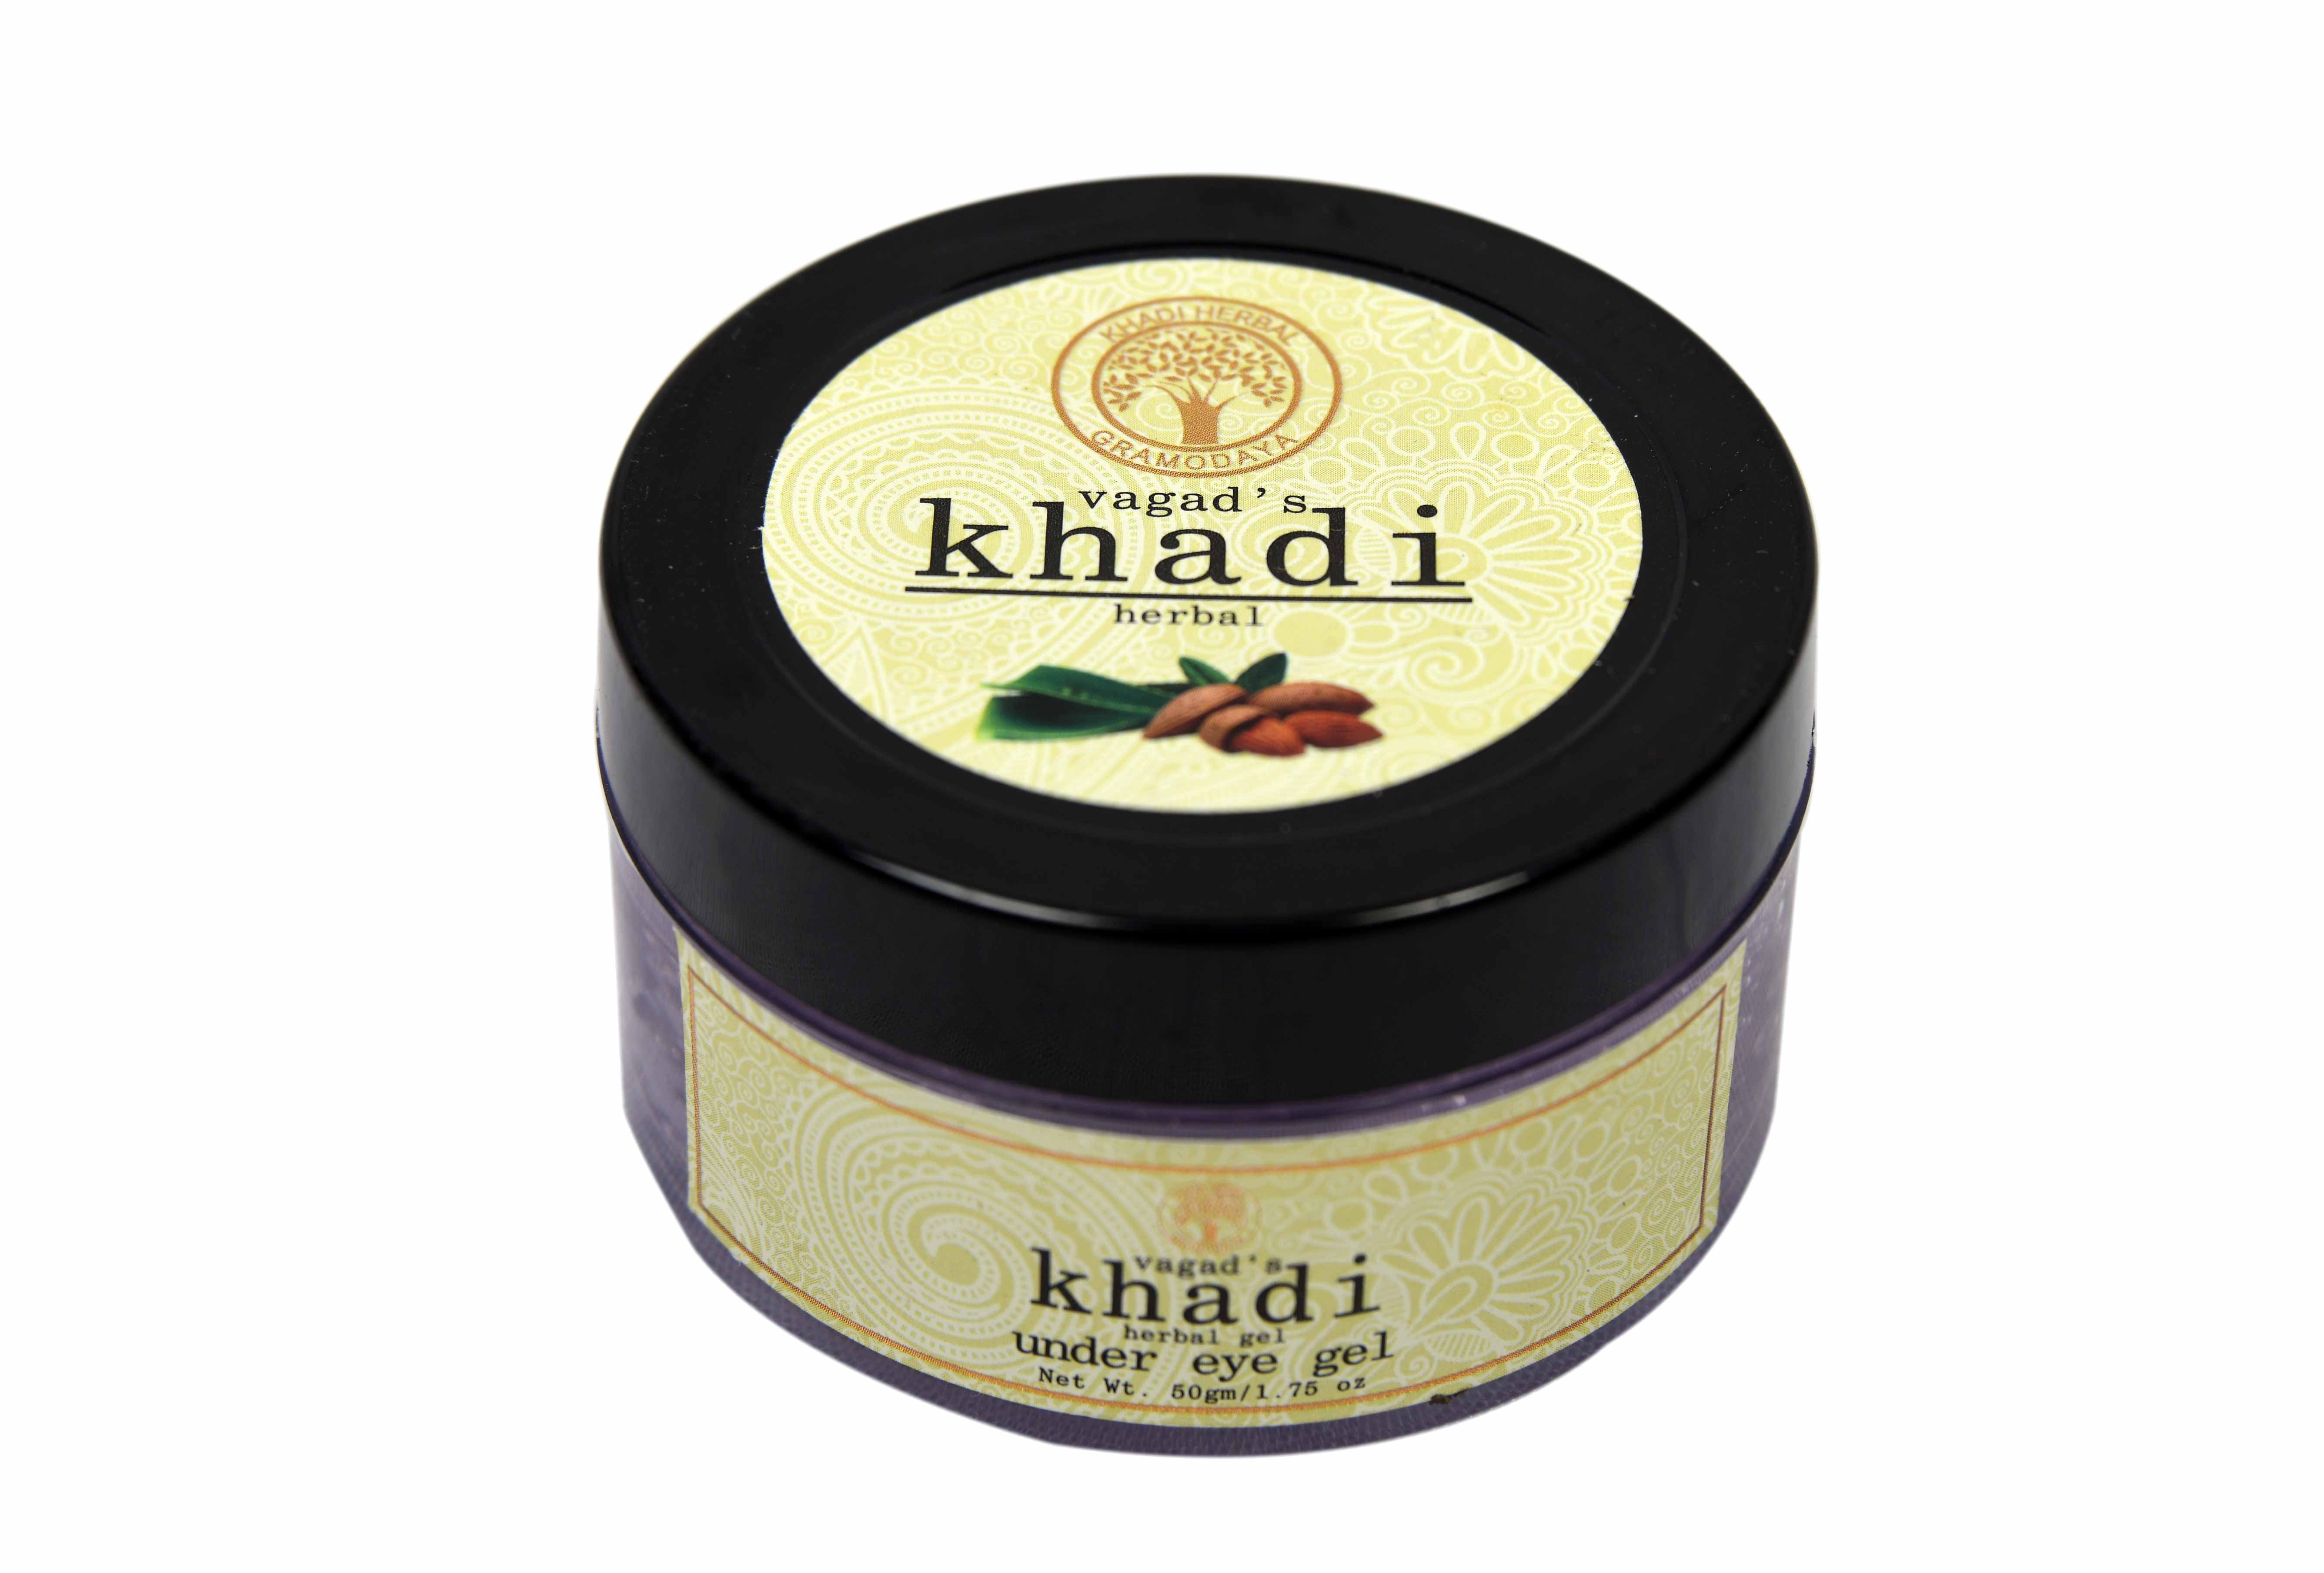 Buy Vagad's Khadi Under Eye Gel at Best Price Online